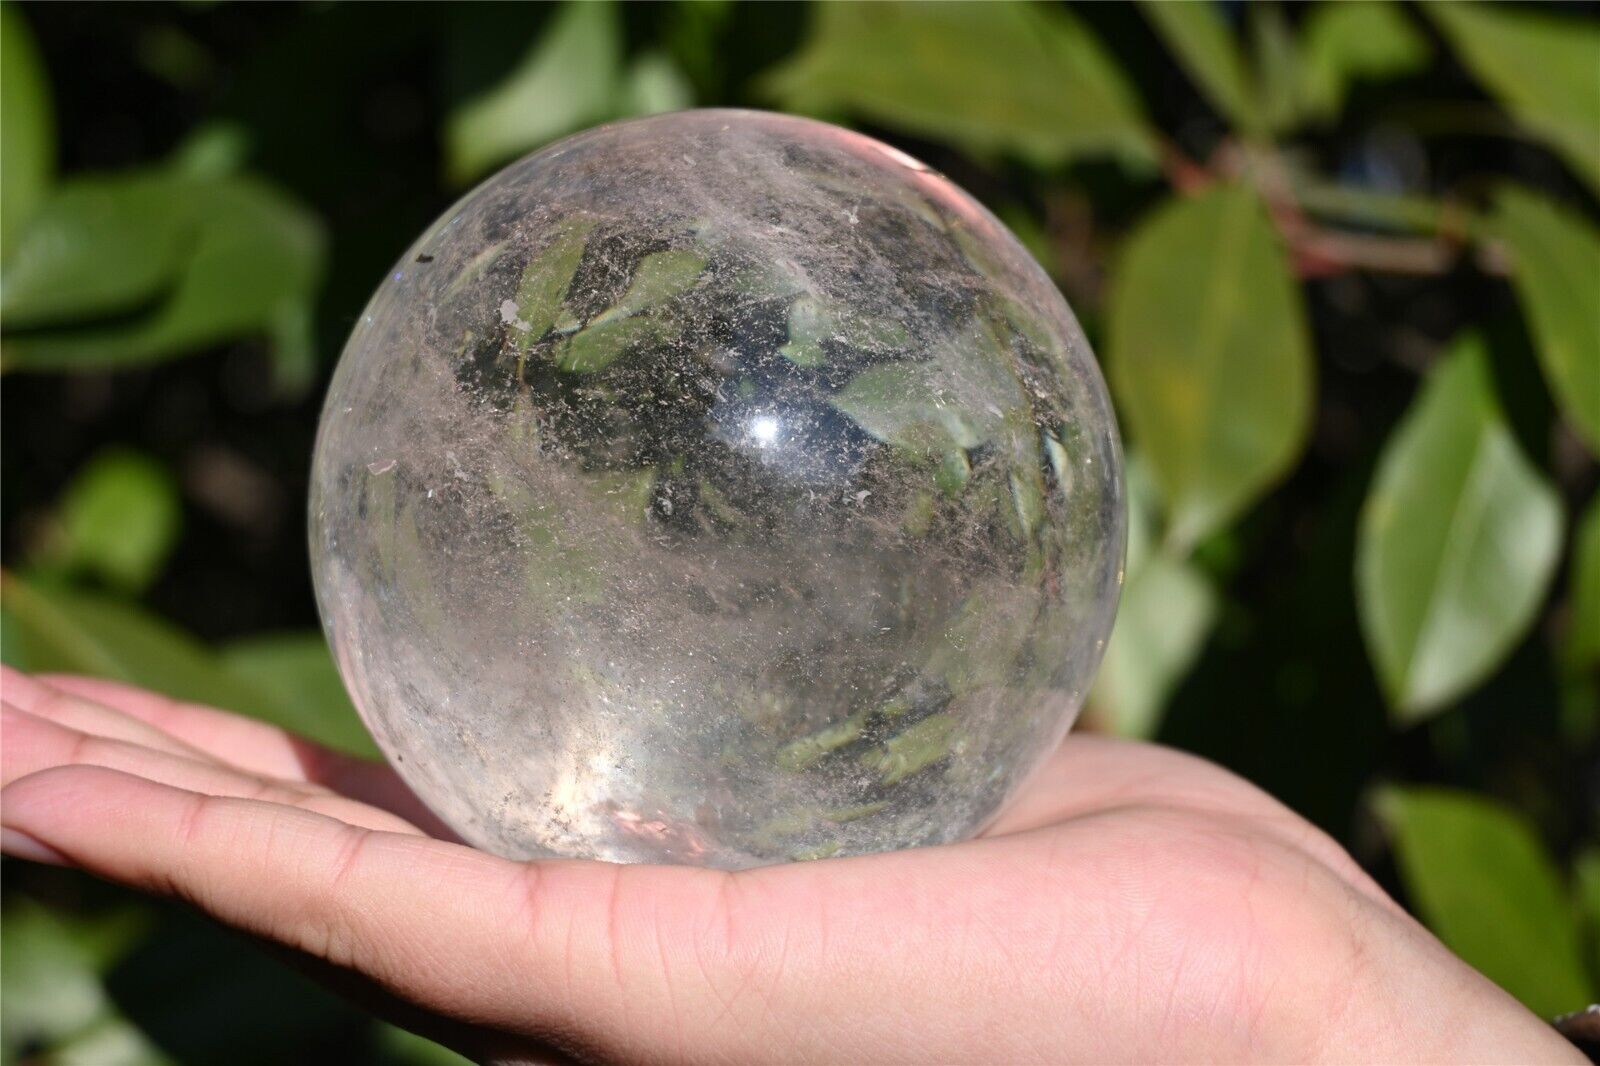 800g Natural clear quartz ball quartz crystal sphere 82mm reiki healing XQ2228